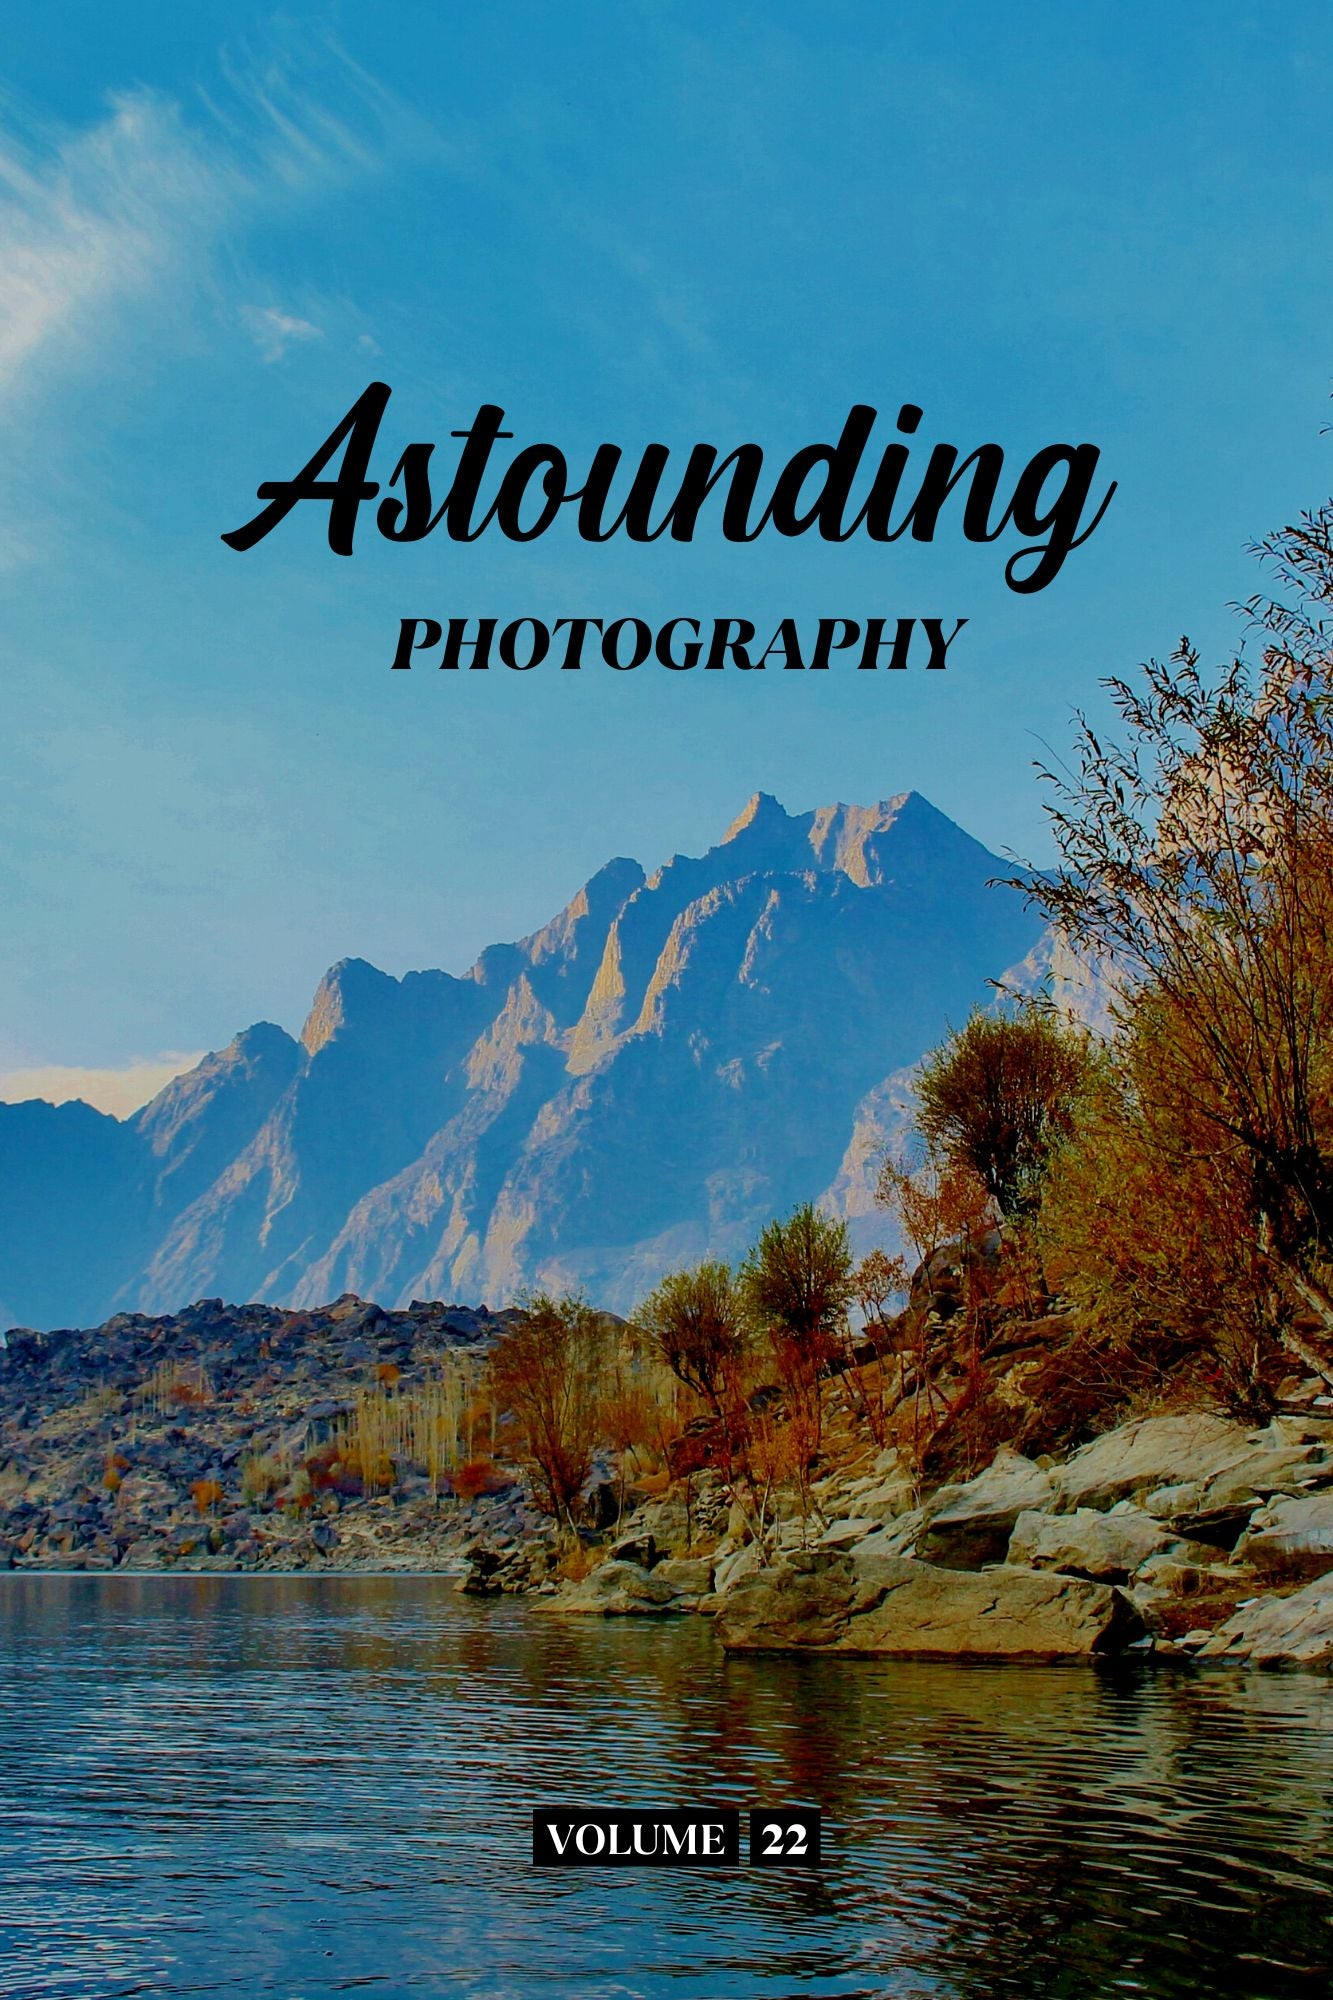 Astounding Photography Volume 22 (Physical Book Pre-Order)